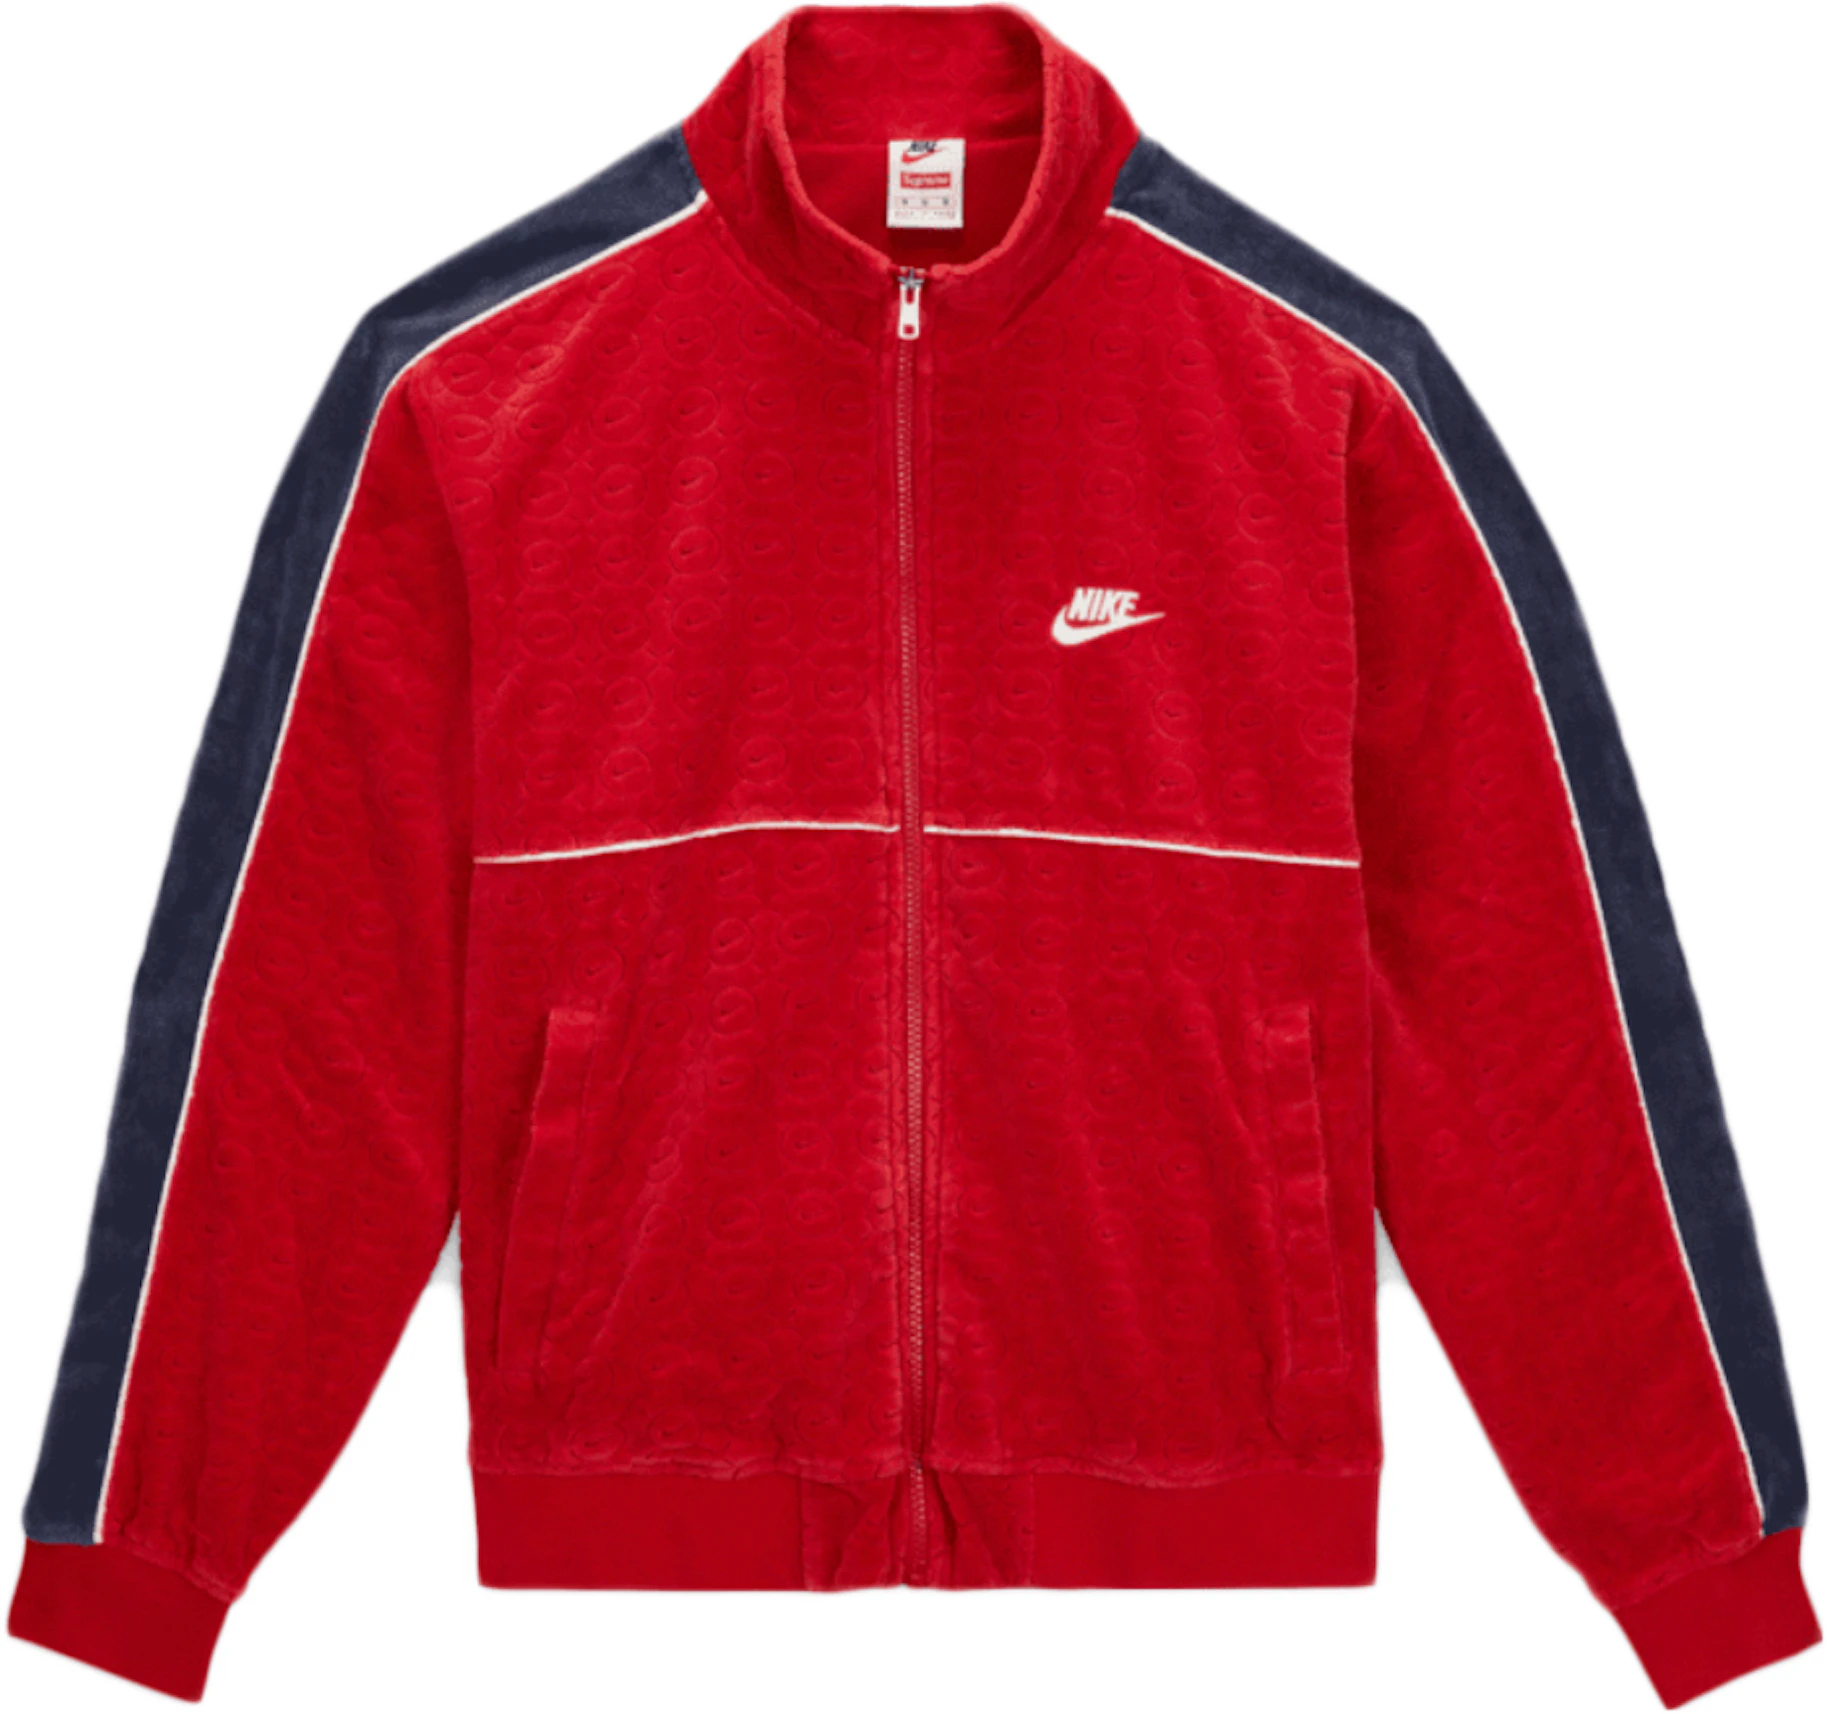 Supreme / Nike® Velour Track Jacket Pant